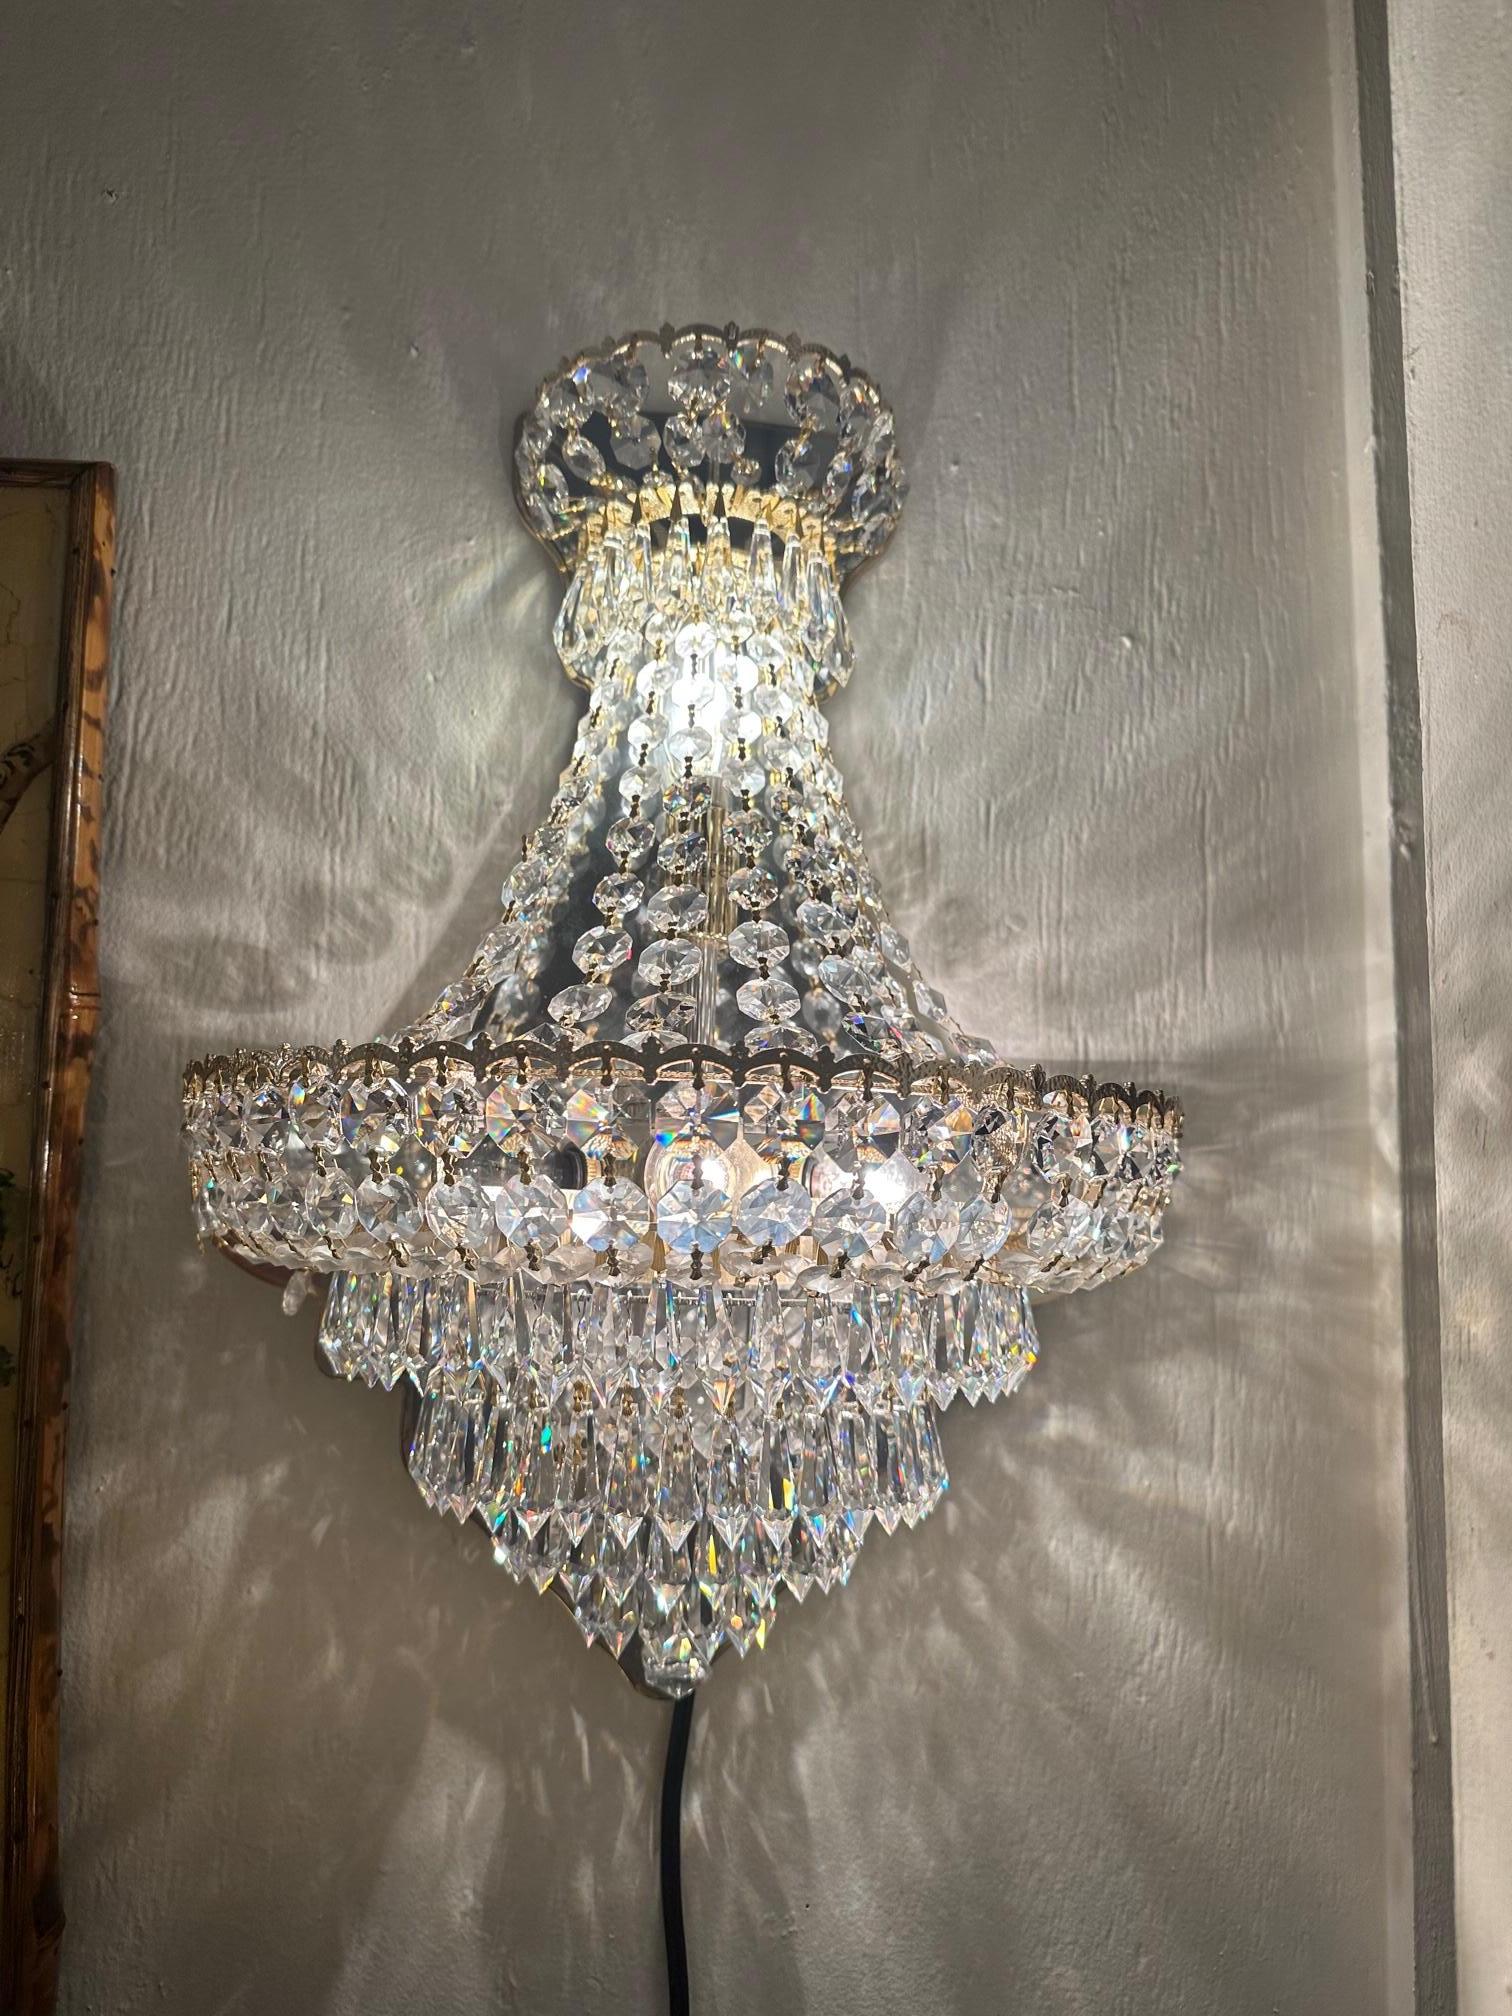 Paire d'appliques Schonbek très glamour et scintillantes, avec des colliers de cristaux et une armature plaquée or, avec 4 lumières intérieures.  Abandonné en 2013 en raison de l'indisponibilité des cristaux.   Ils n'ont jamais été utilisés et ont